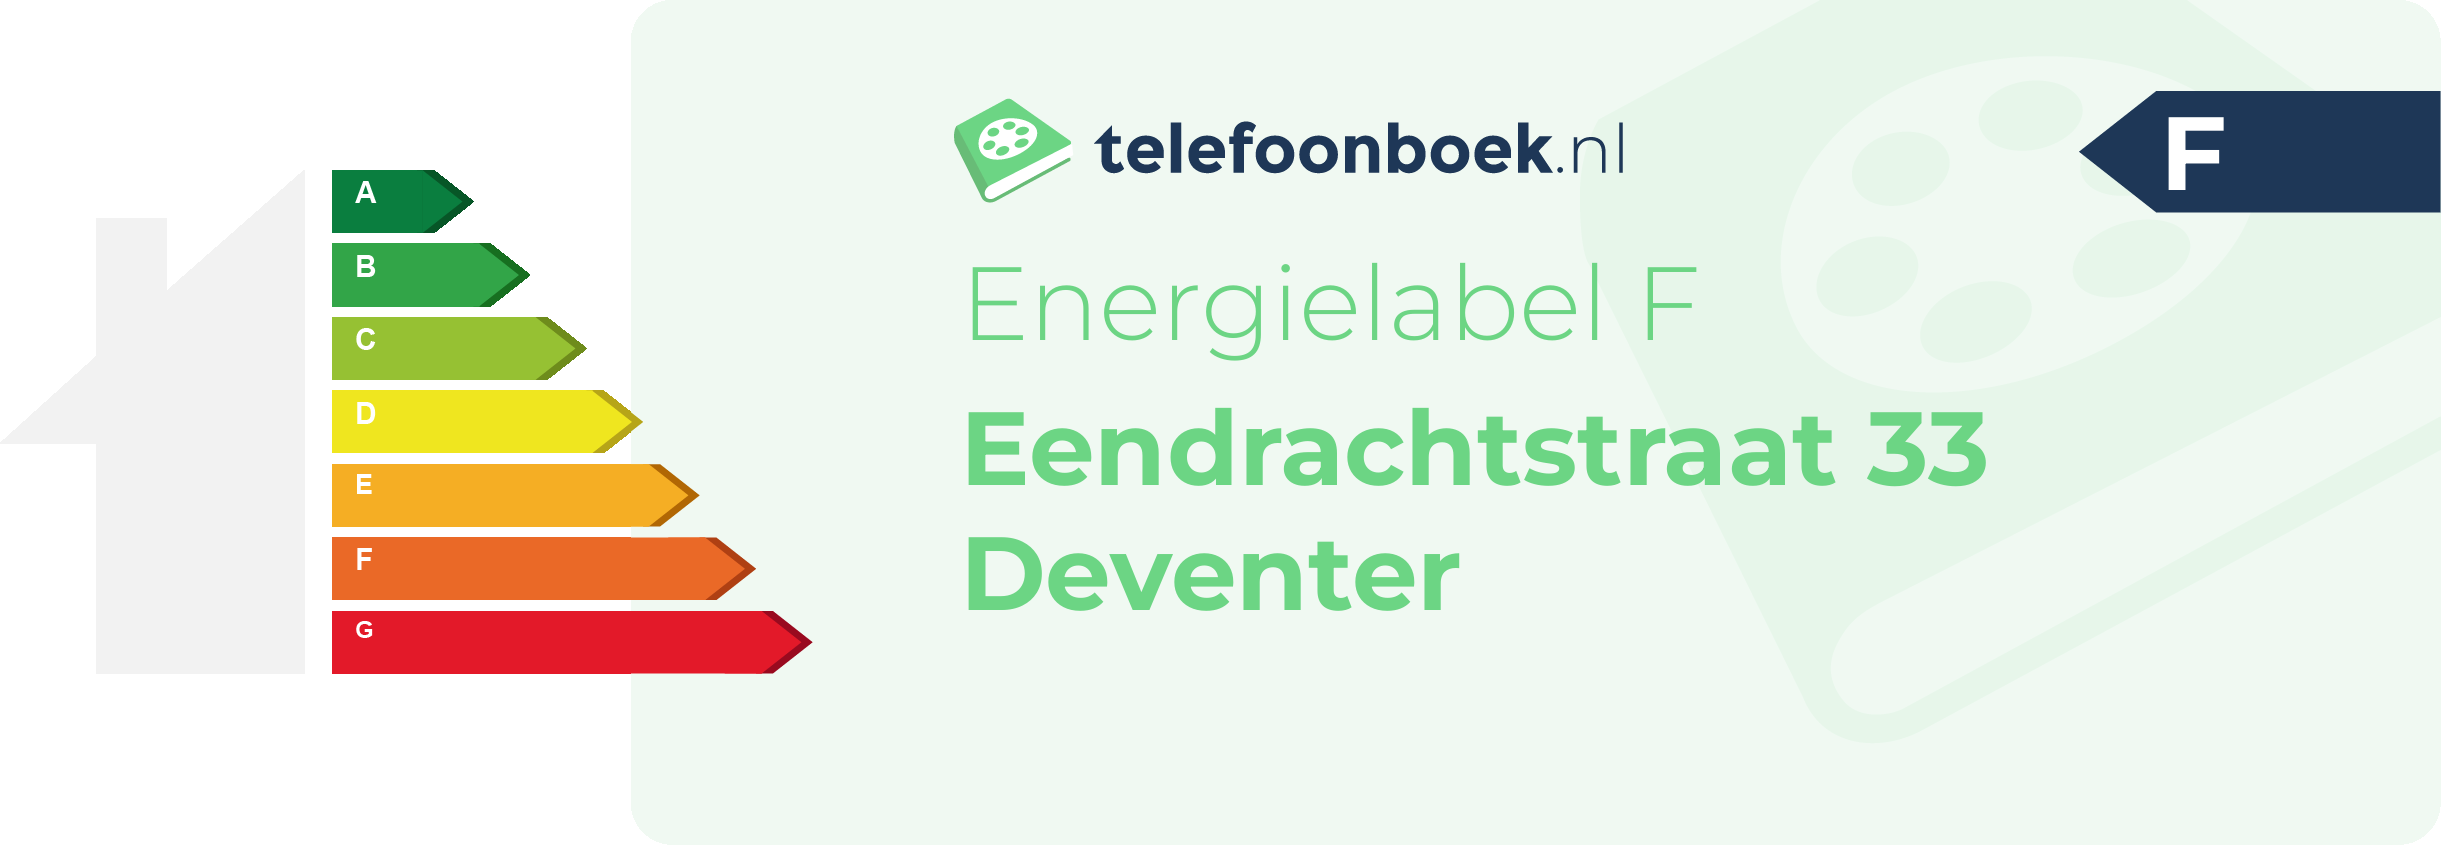 Energielabel Eendrachtstraat 33 Deventer